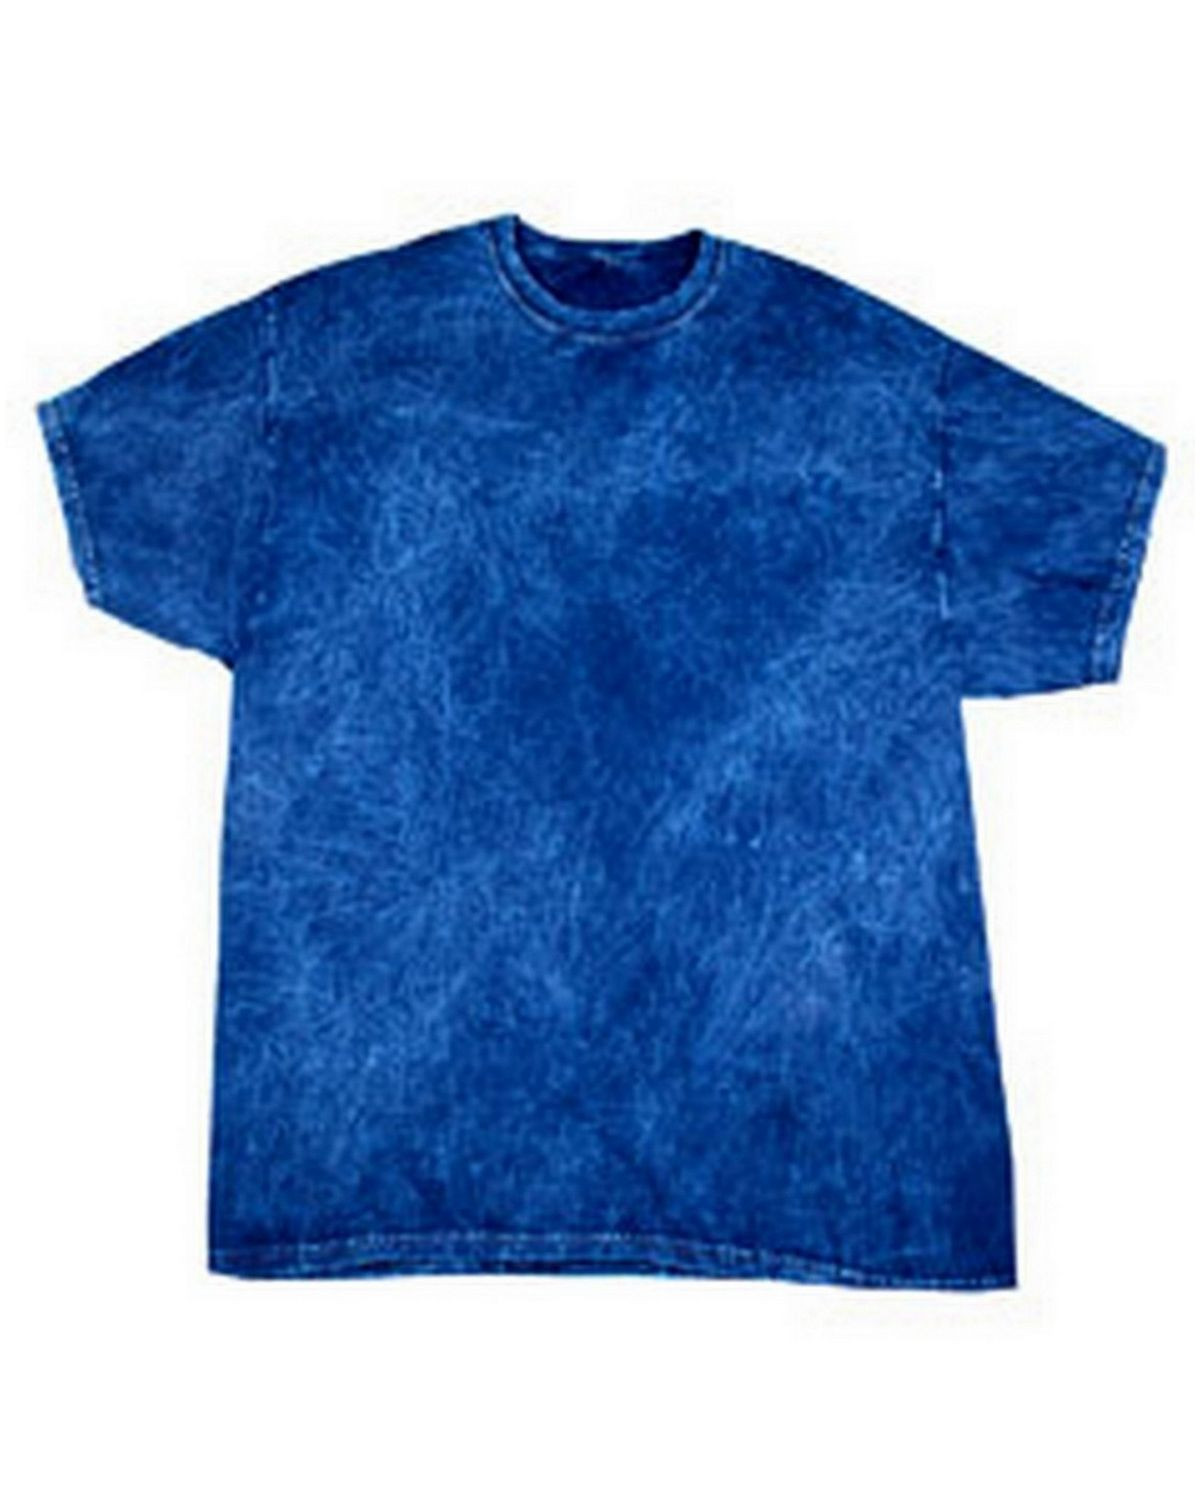 Tie-Dye CD1300 Men's Vintage Mineral Wash T-Shirt - Mineral Navy - S #vintage